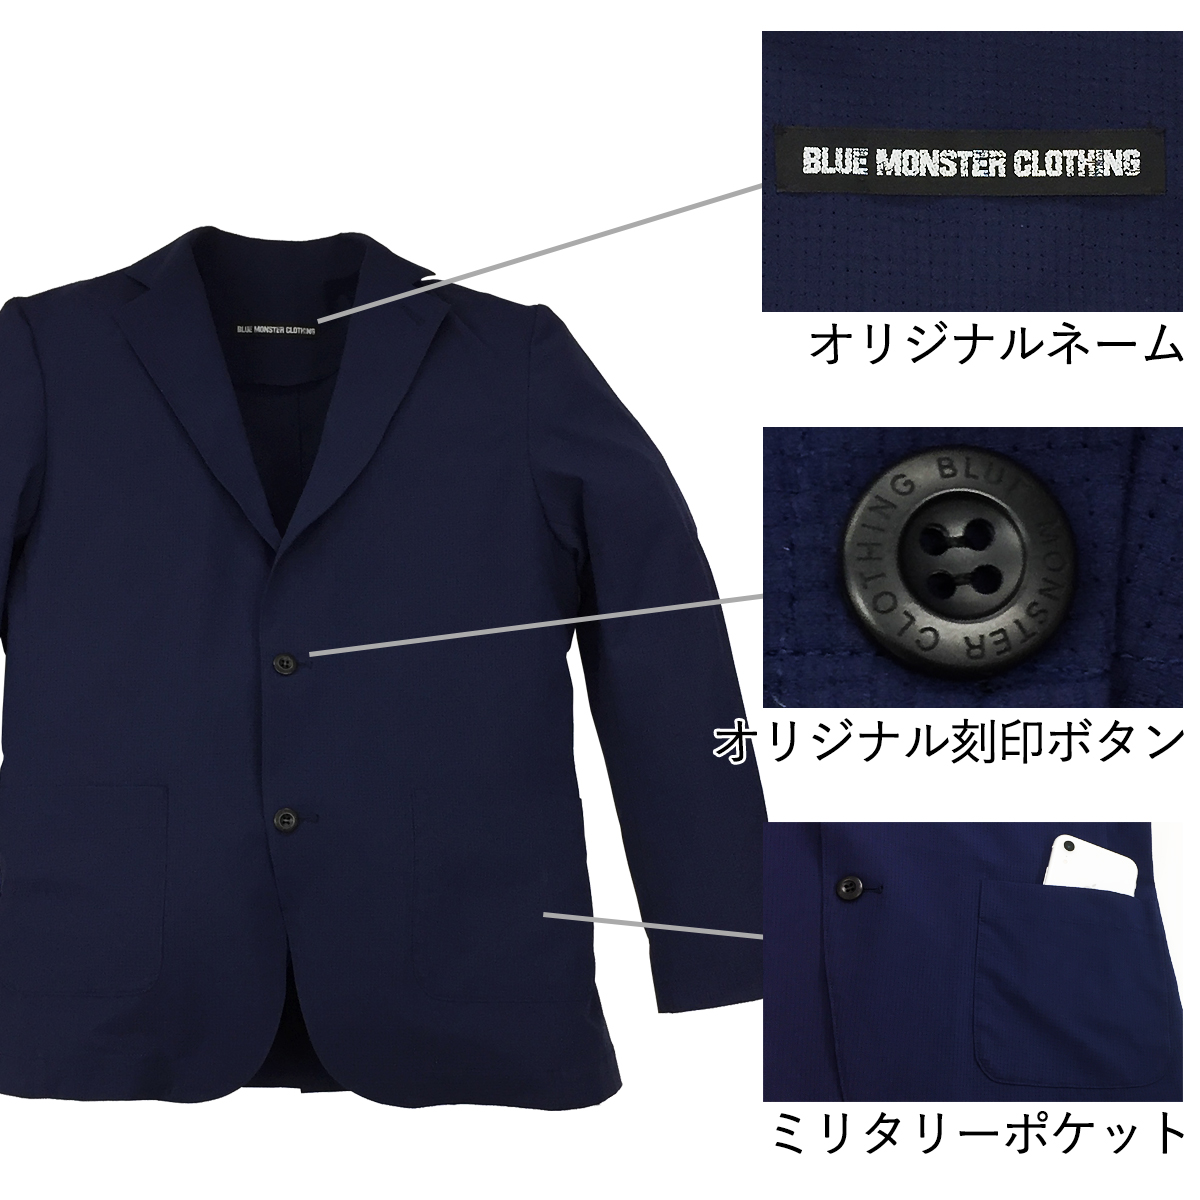 BMC空冷式スーツ